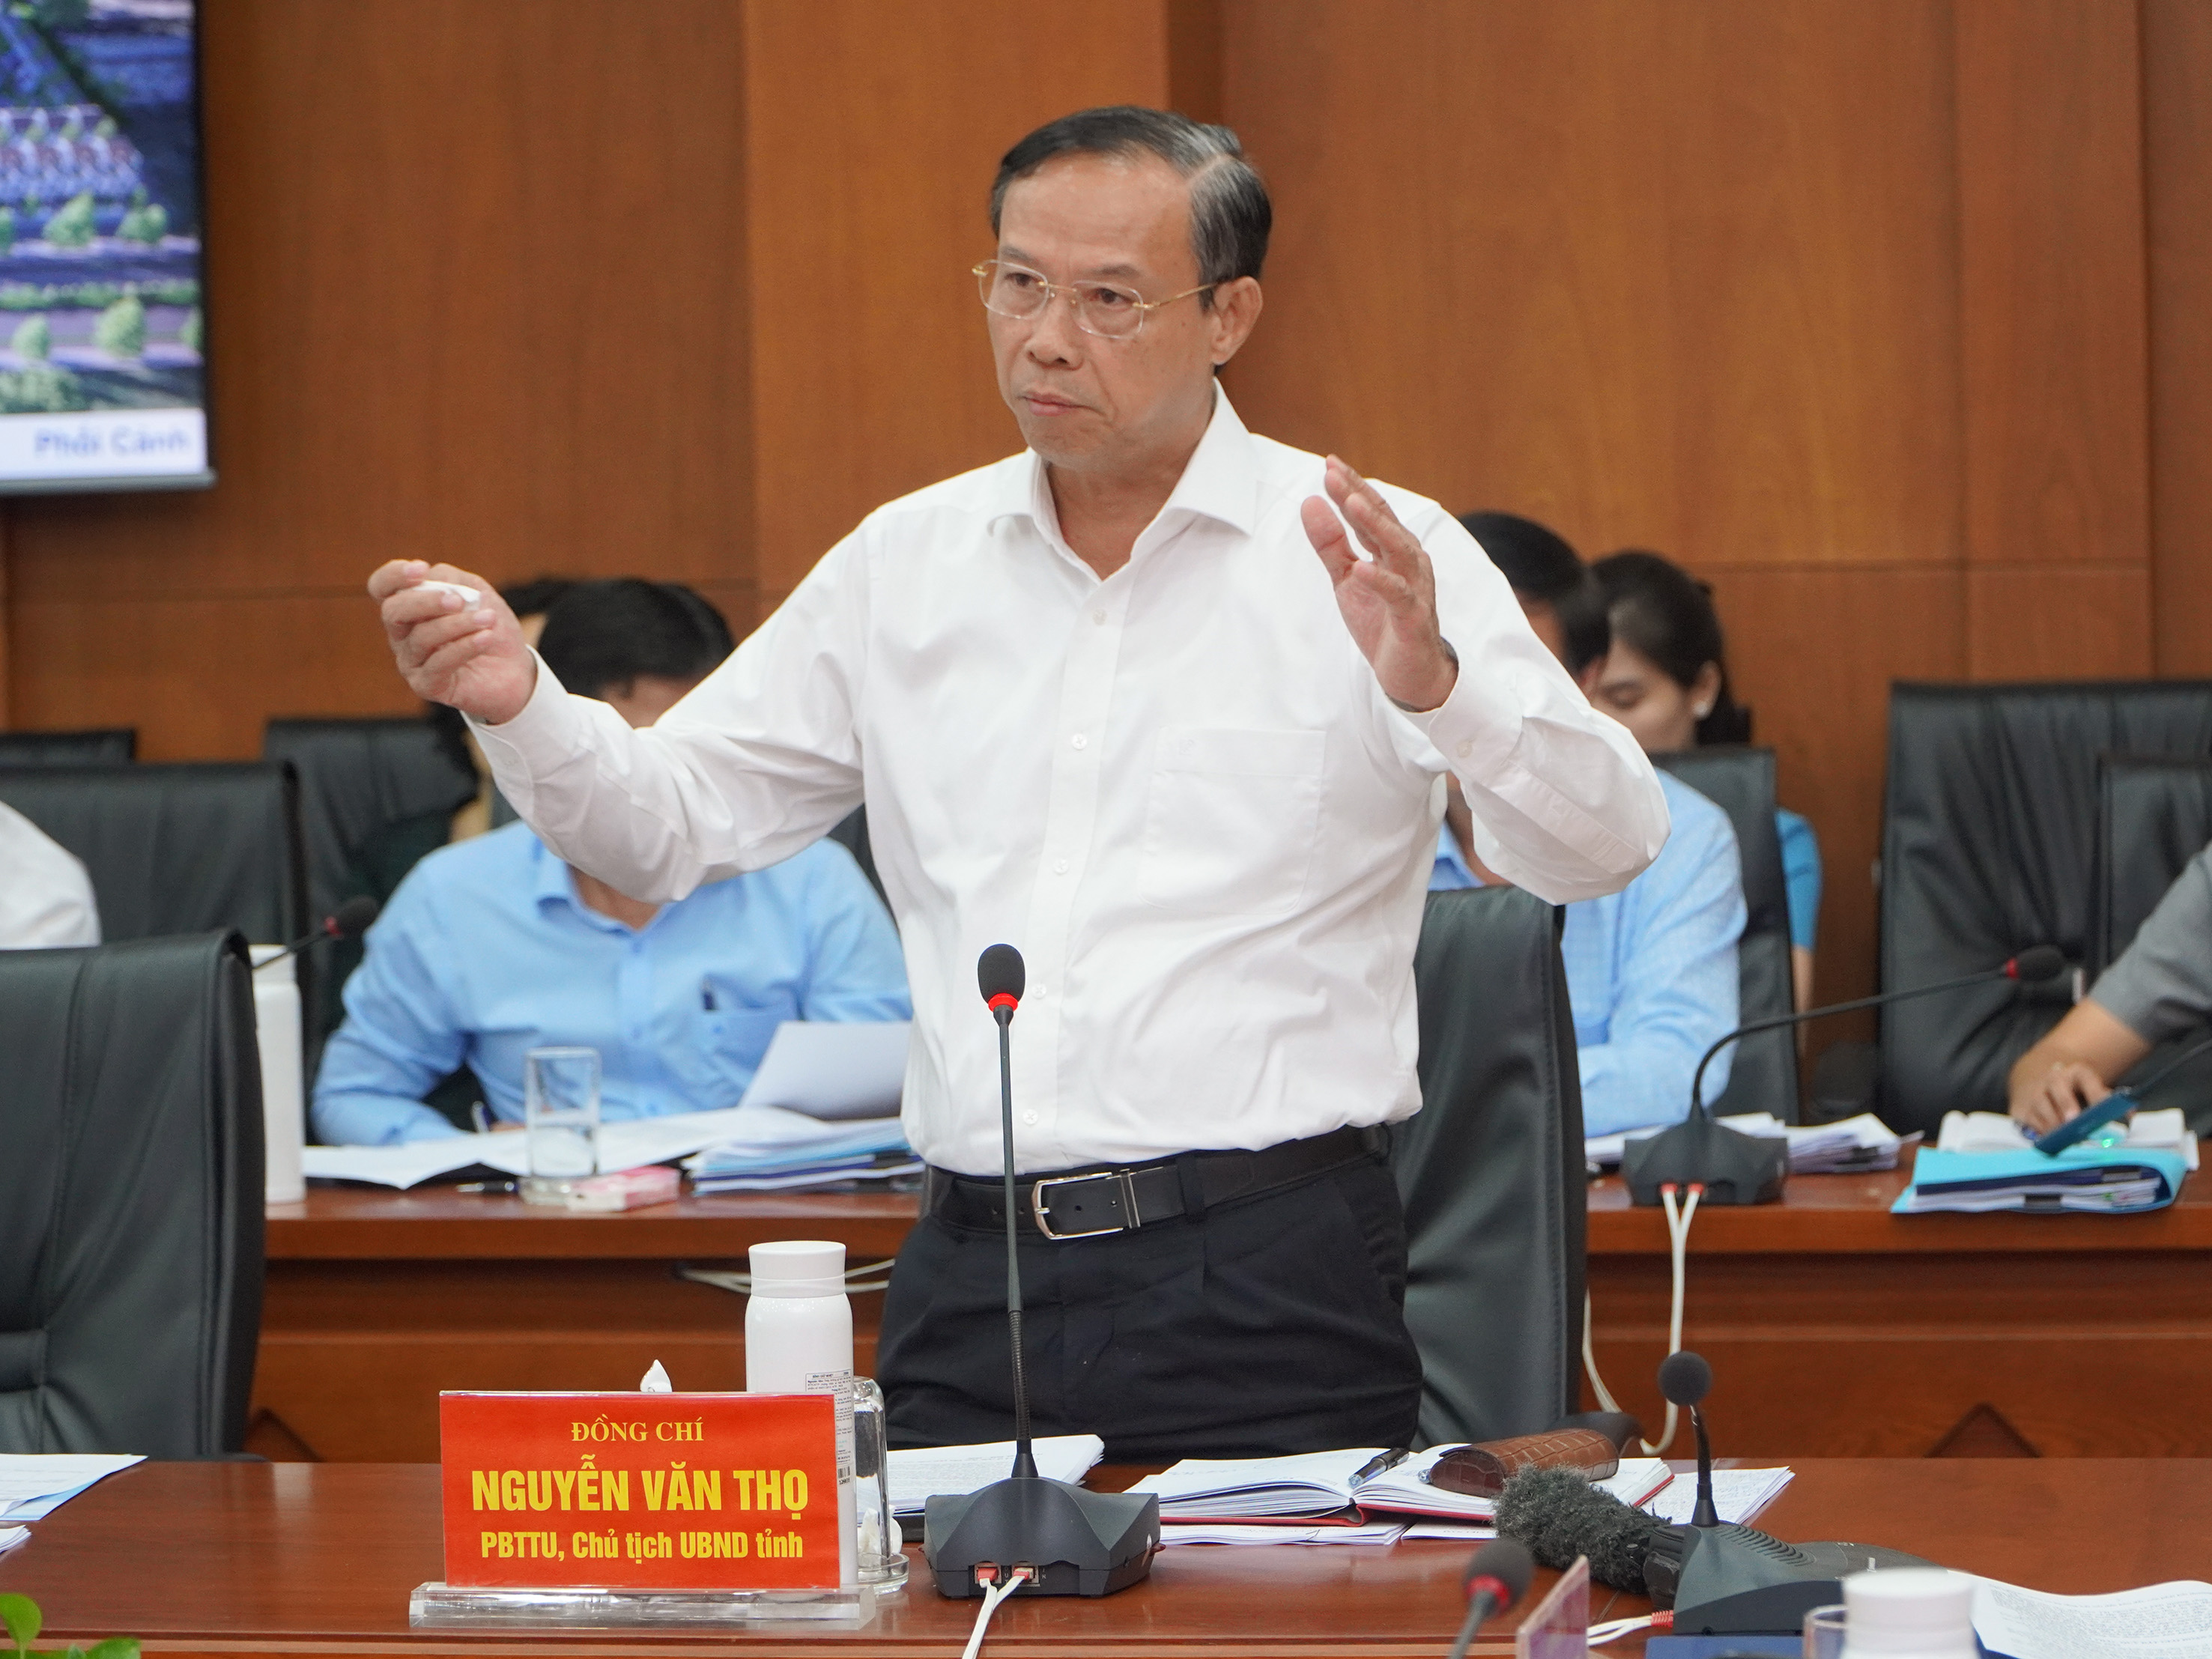 Ông Nguyễn Văn Thọ, Chủ tịch UBND tỉnh cho biết, danh mục các dự án nhà ở xã hội được tỉnh xây dựng với định hướng tầm nhìn dài hạn.